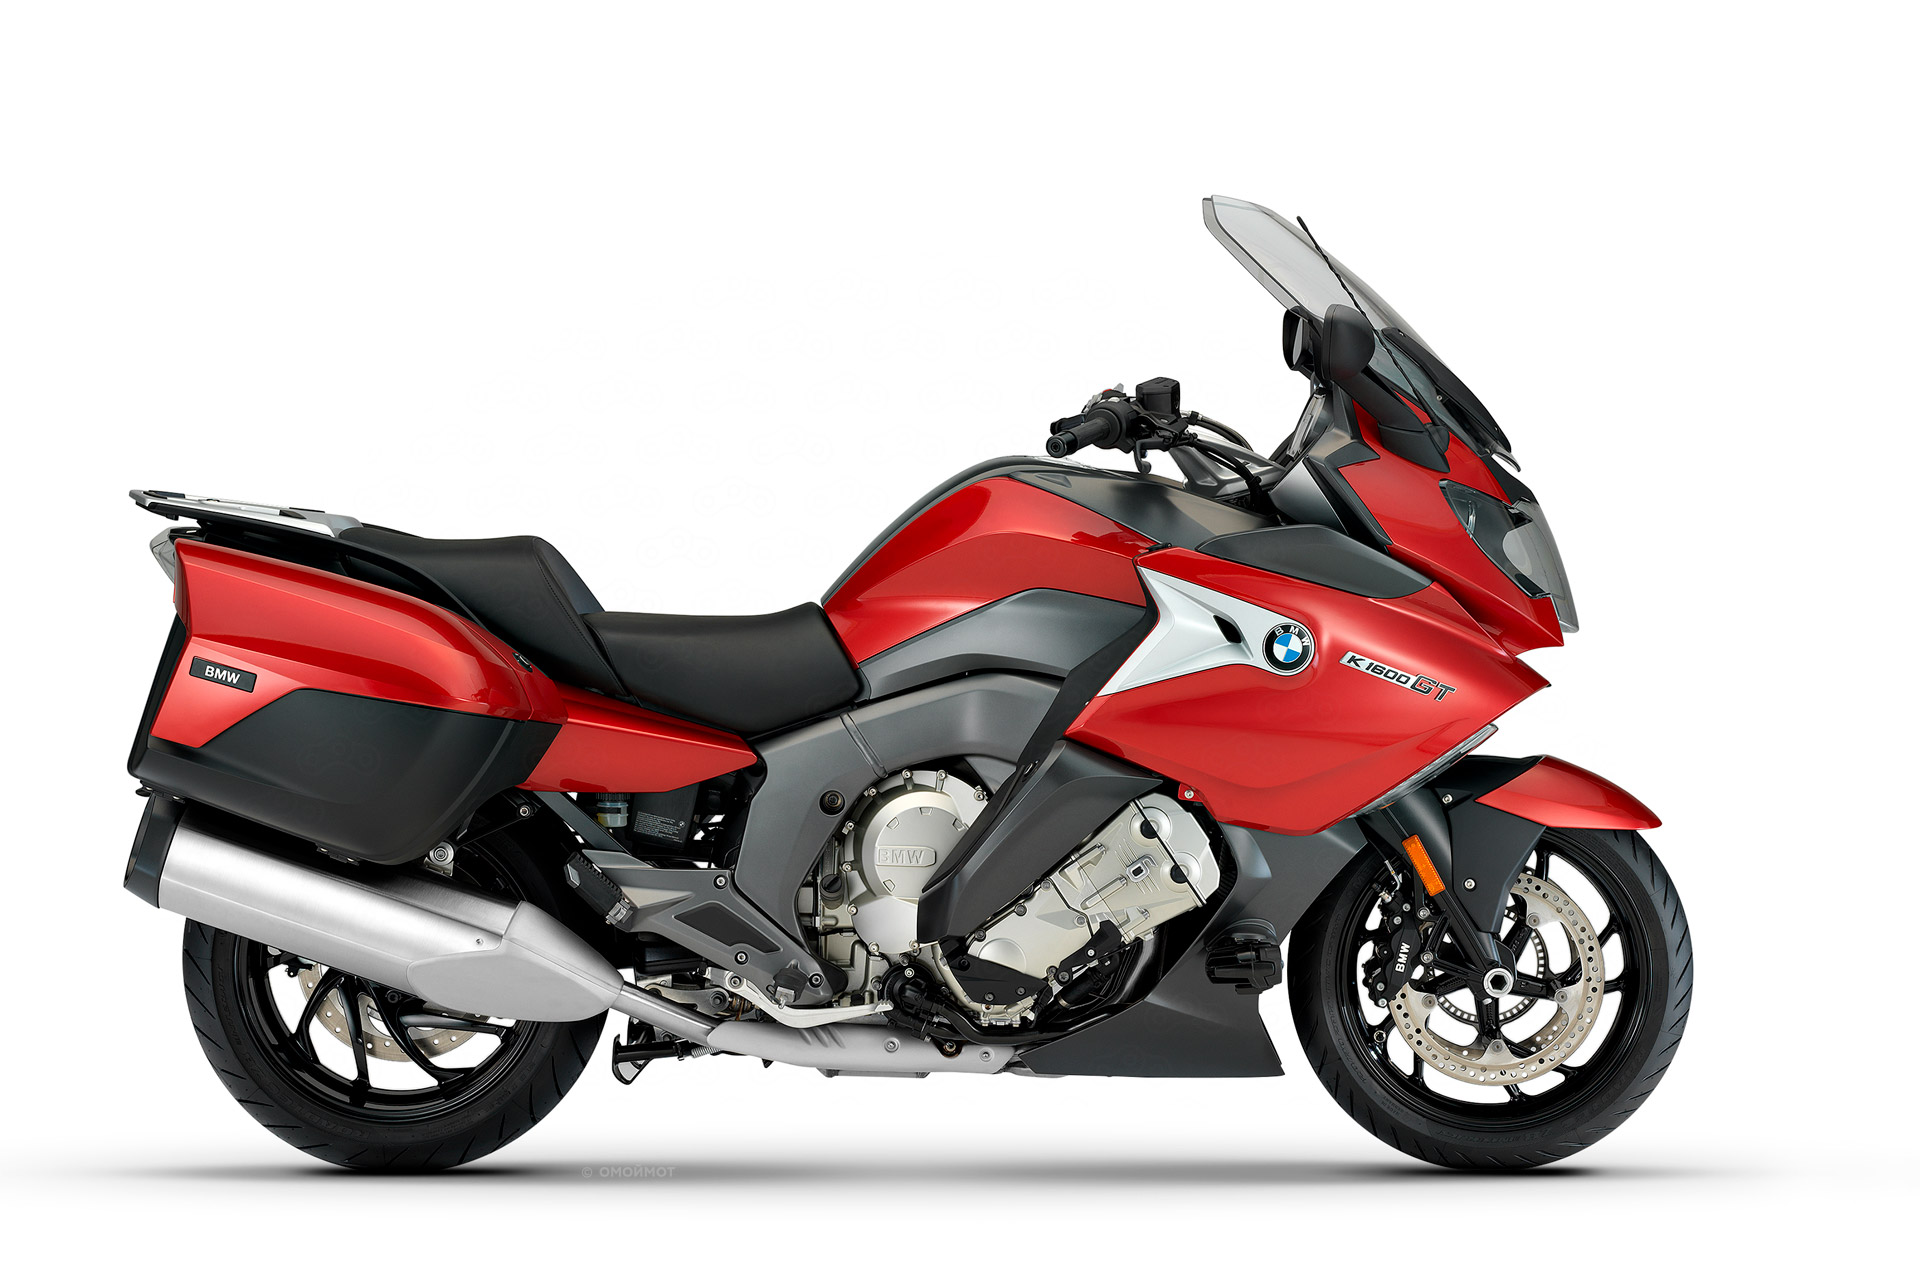 Мотоцикл BMW BMW K1600GT цена, фото и характеристики нового мотоцикла